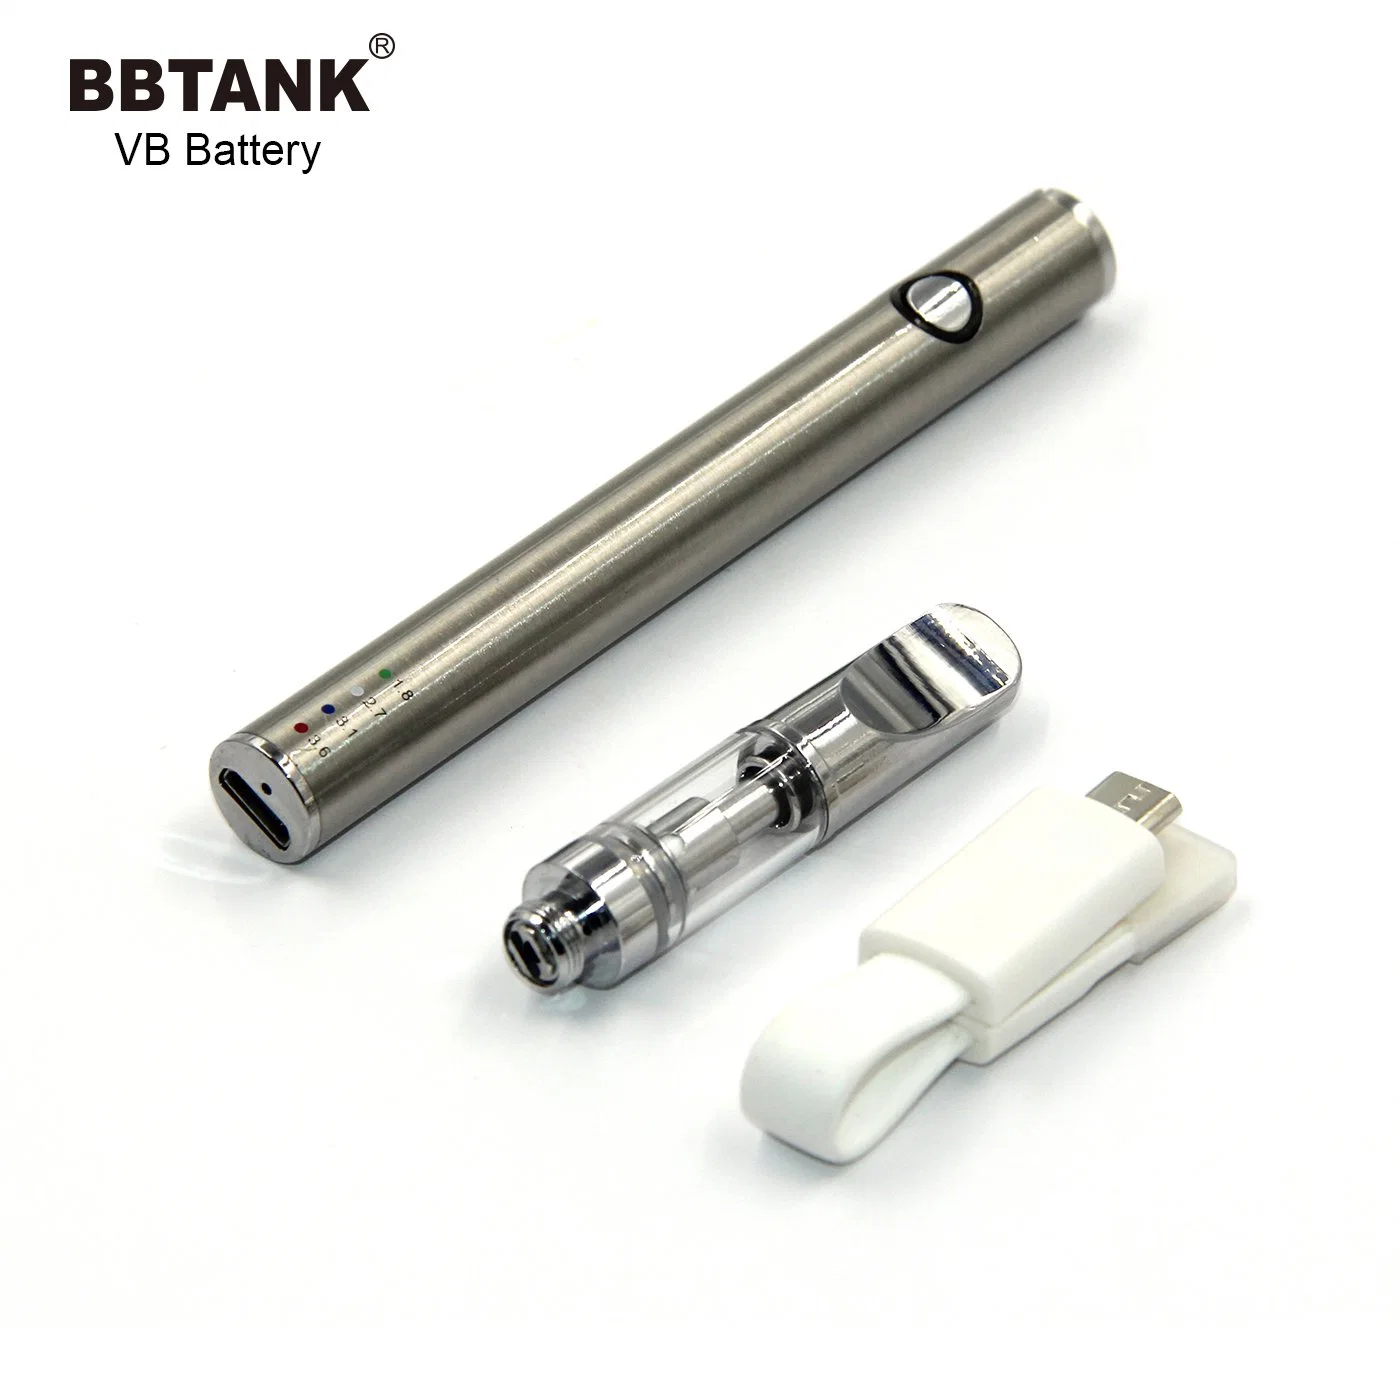 Batterie Bbtank VB 510 Thread avec fonction de préchauffage avec différents réglages de tension